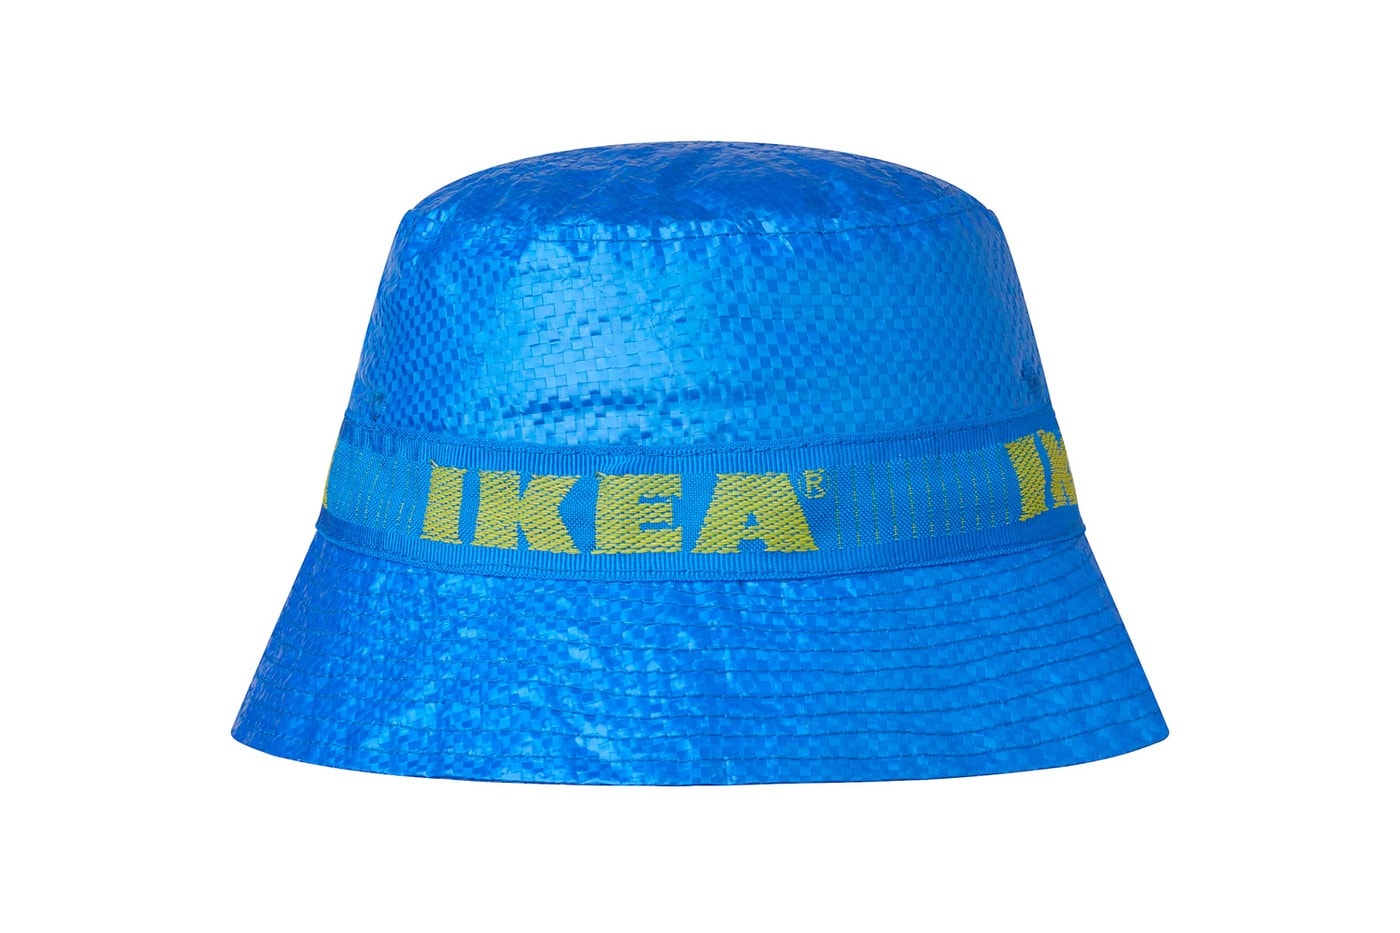 官方发售$3.99 美金− IKEA 正式推出「KNORVA」渔夫帽款